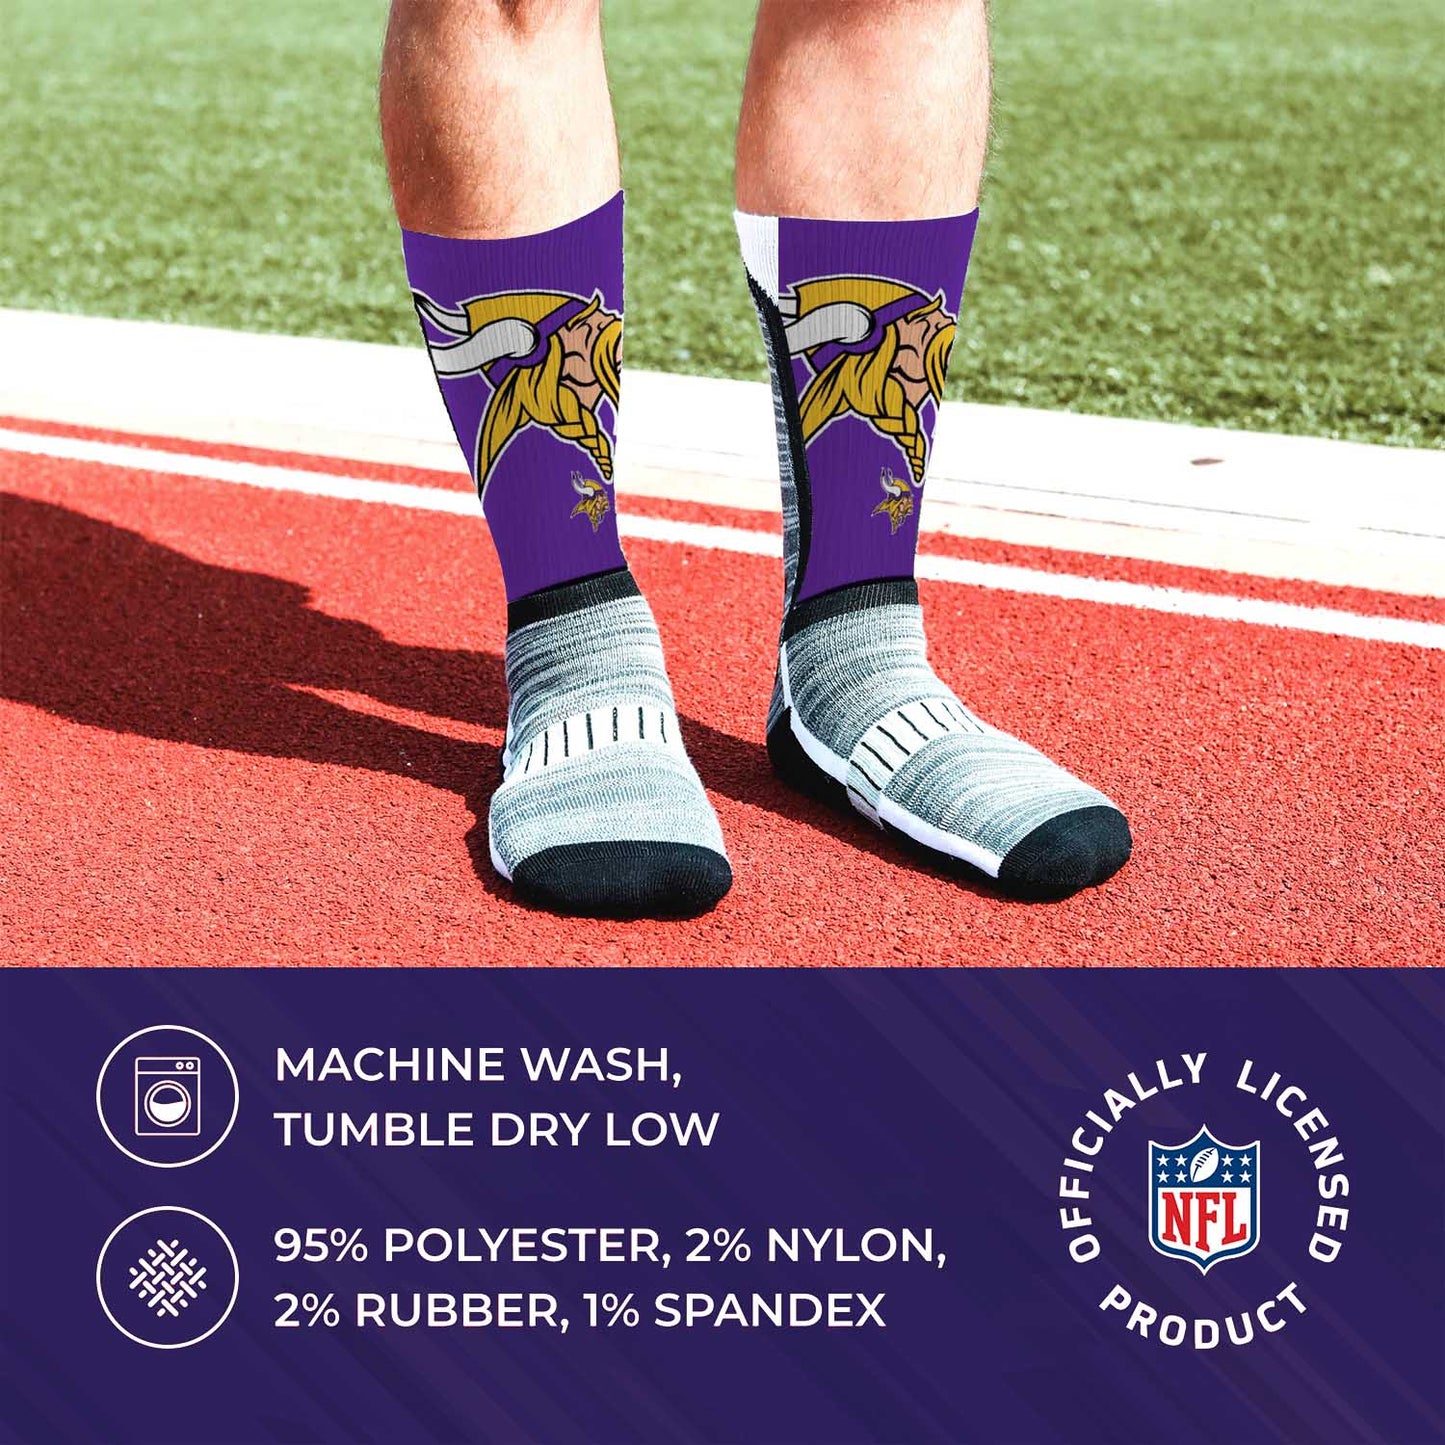 Minnesota Vikings NFL Adult Curve Socks - Purple